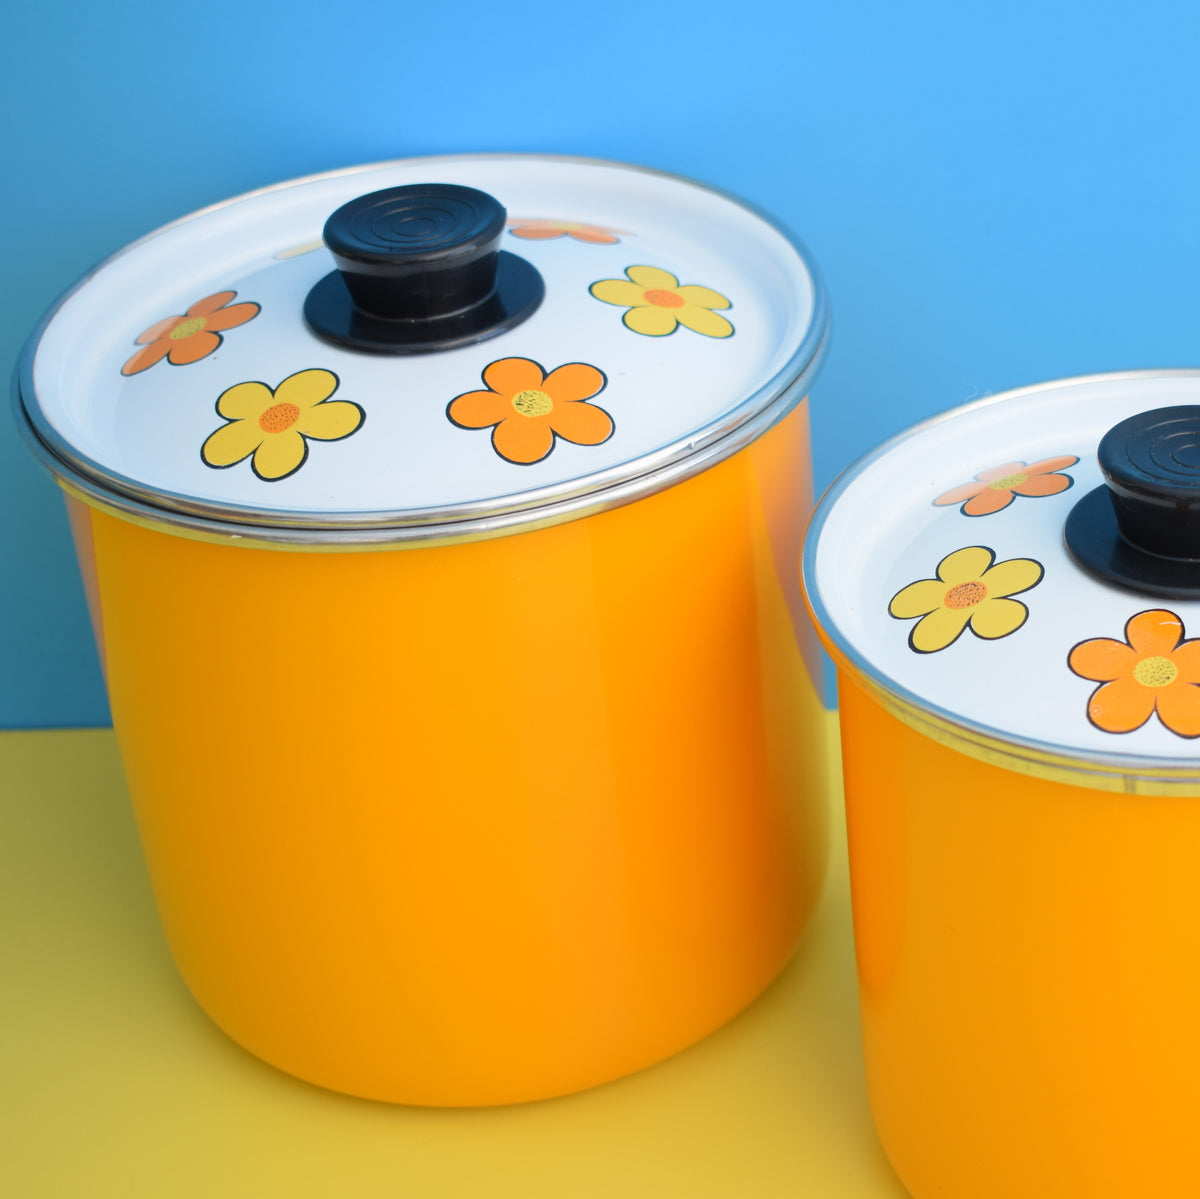 Vintage 1960s Flower Power Enamelled Storage Tins x3 - Yellow & Orange